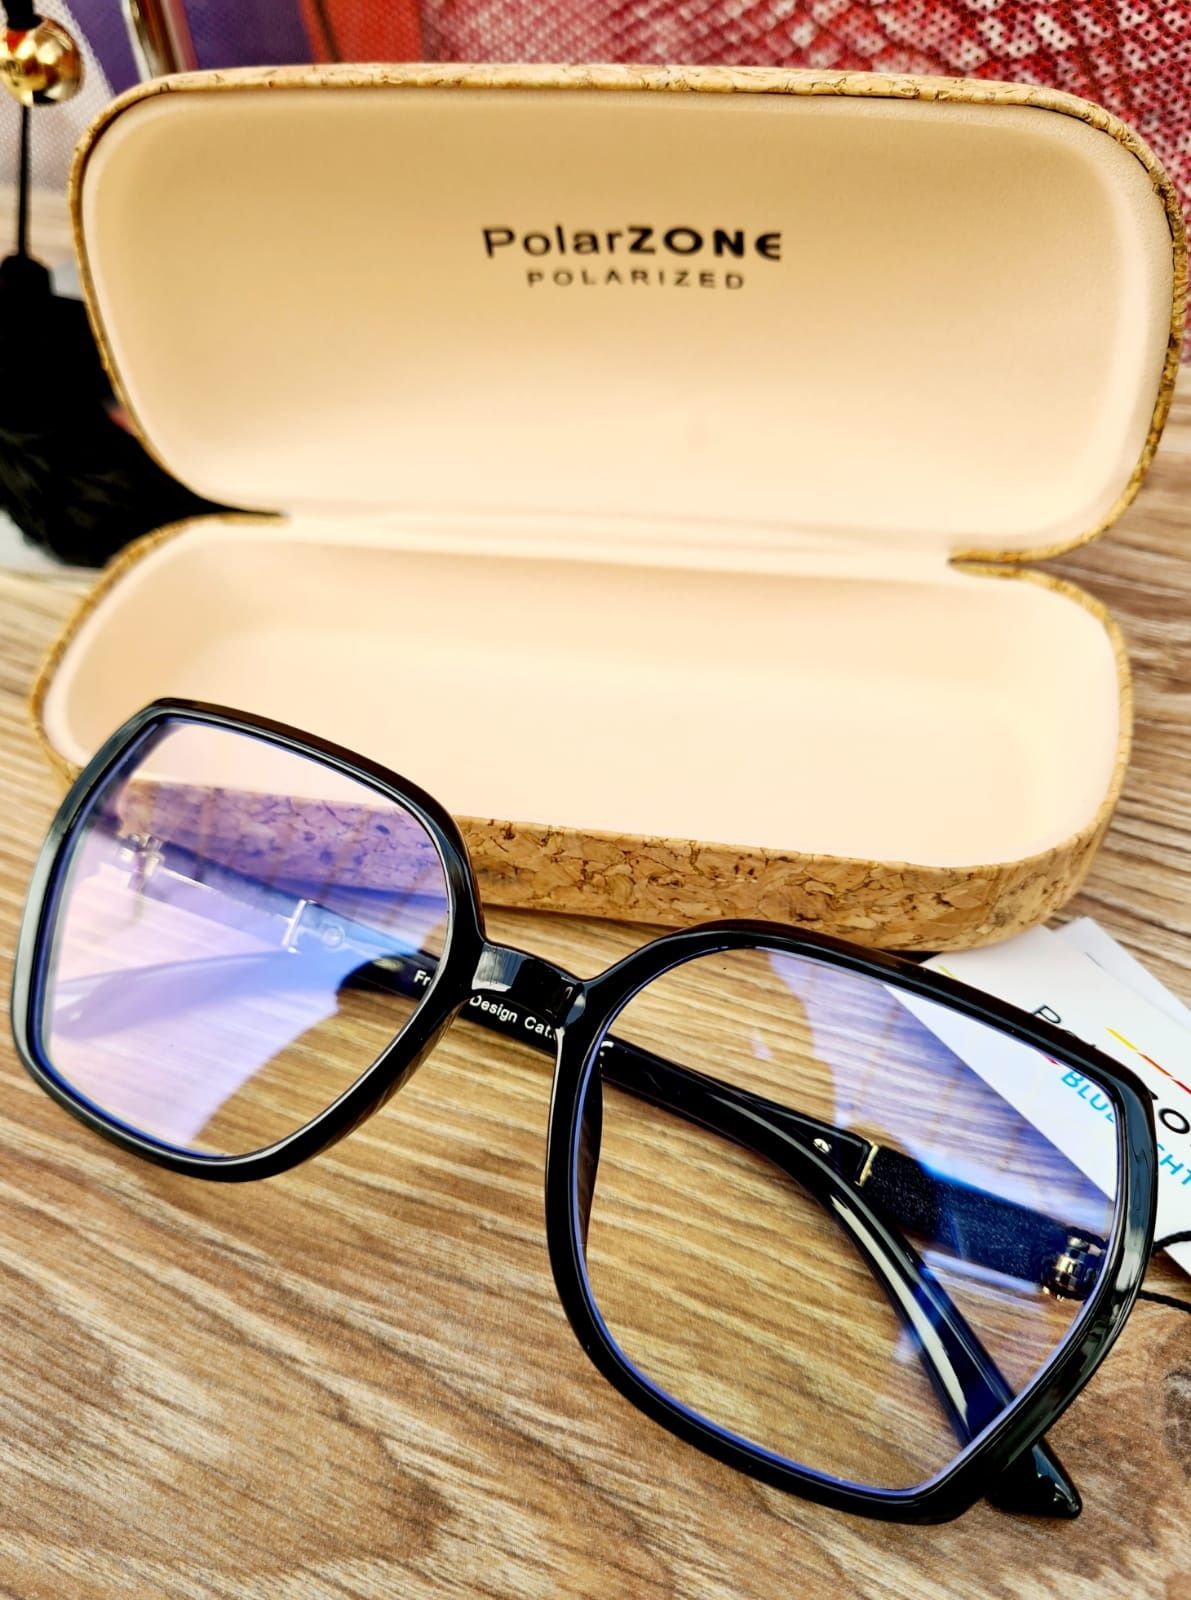 Nowe modne okulary do komputera zerówki damskie marki Polarzone